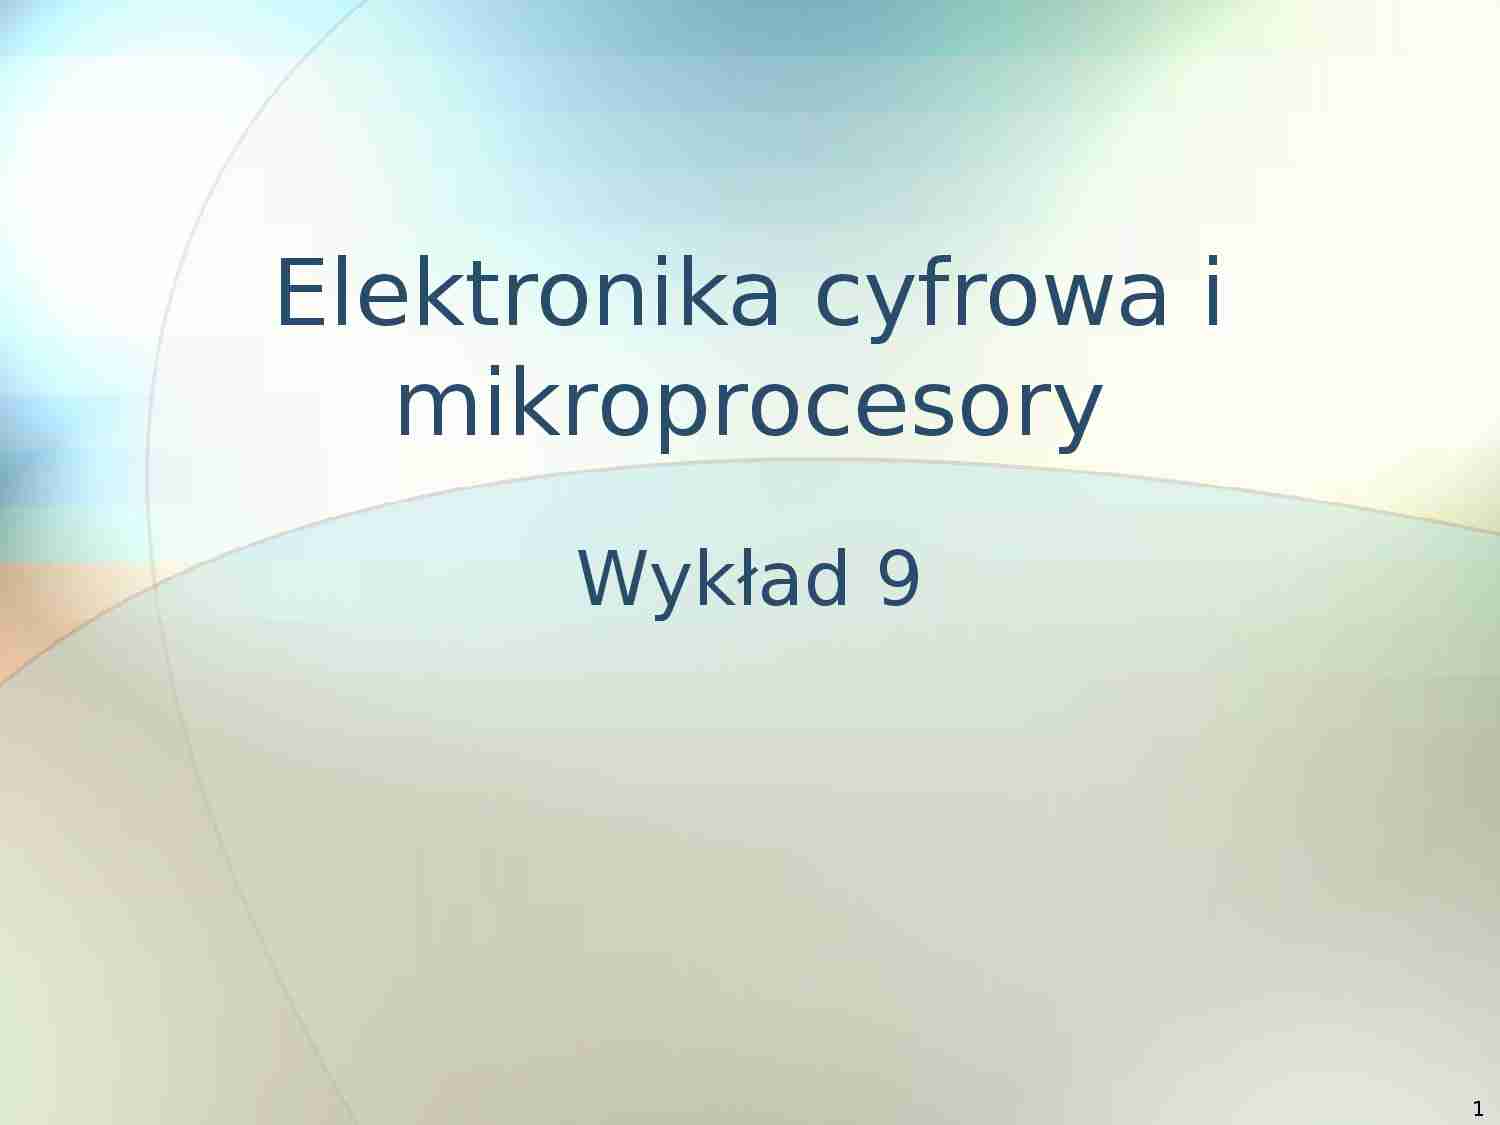 Elektronika cyfrowa i mikroprocesory - wykład 9 - strona 1